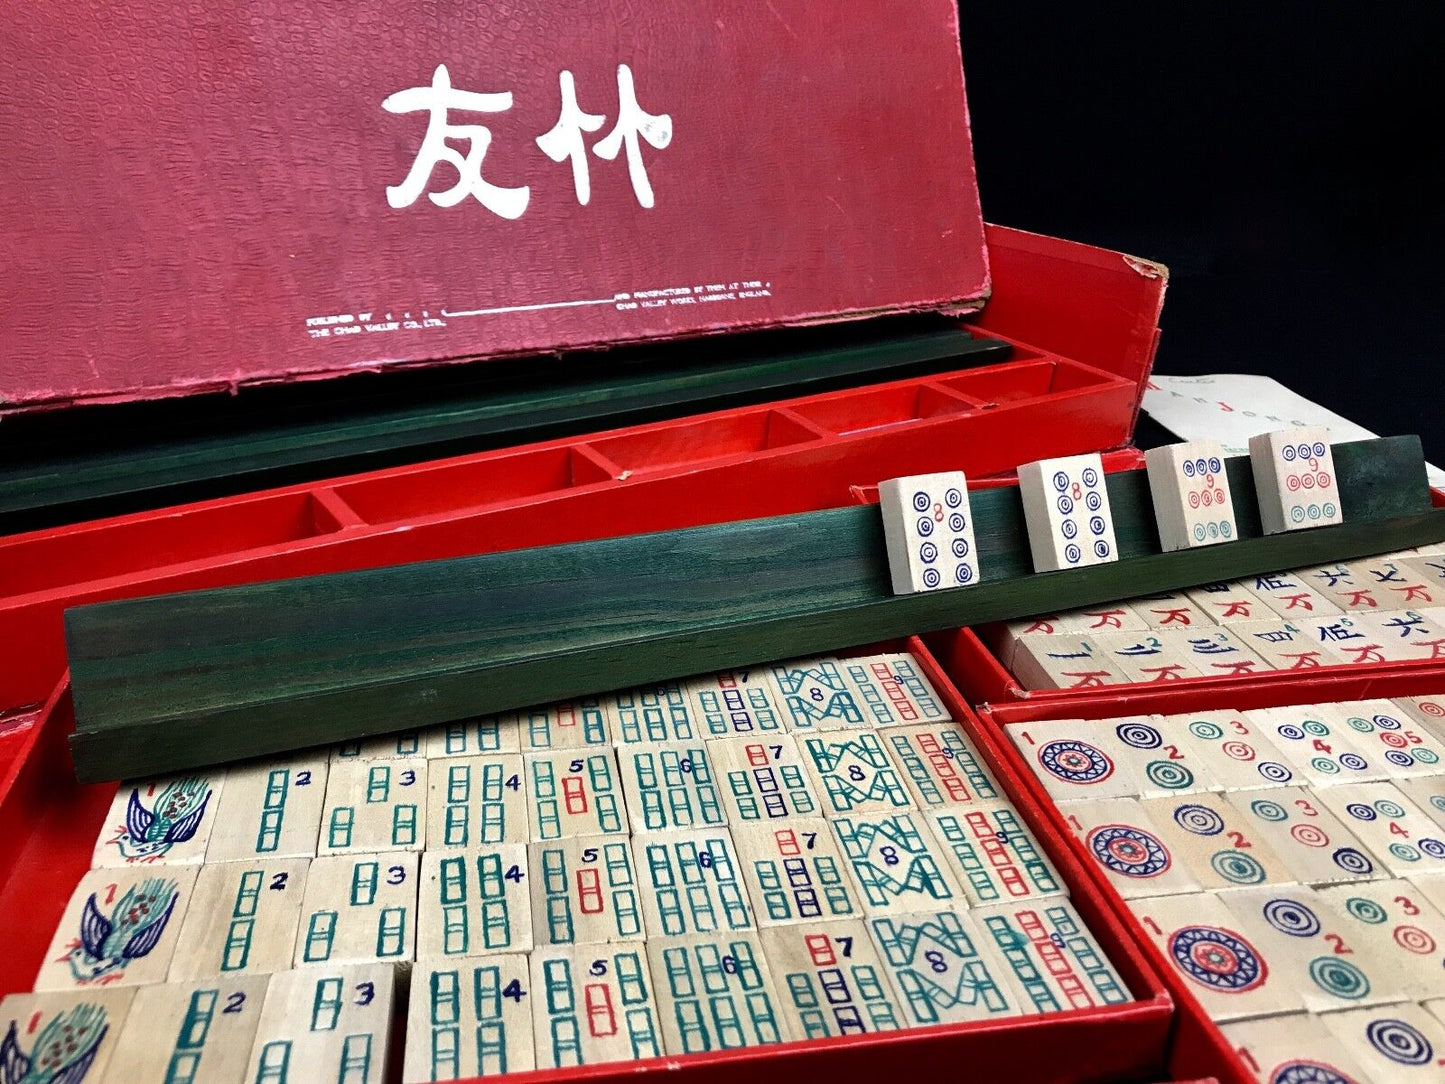 Bamboo Mahjong Set By Chad Valley / Cardboard Box Mah Jong / Vintage / Racks